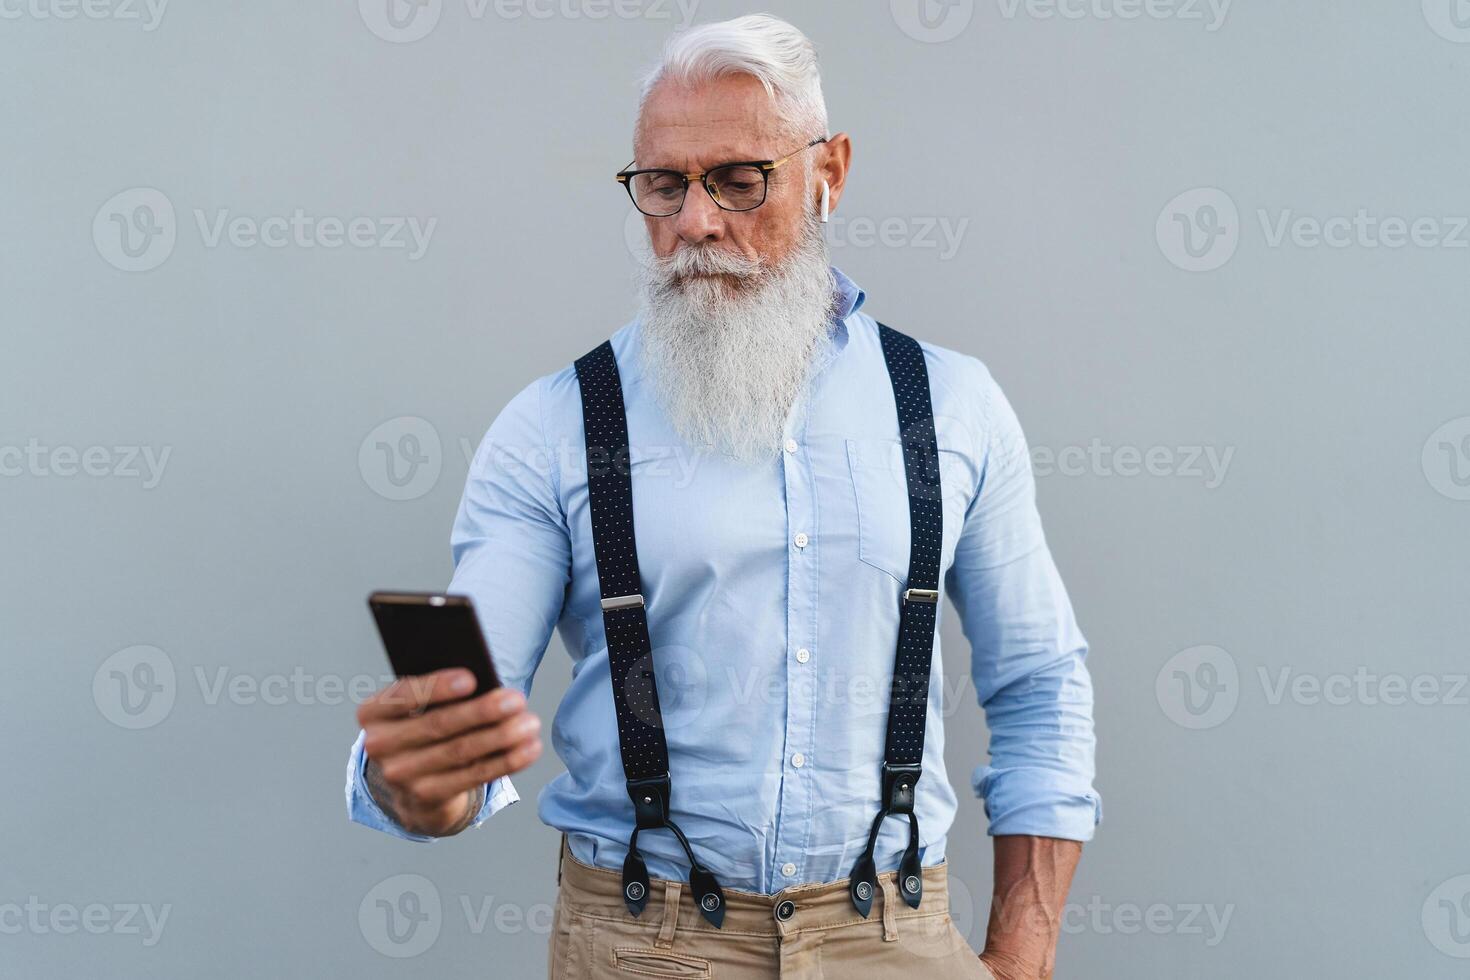 Sénior homme en utilisant mobile téléphone intelligent et écoute la musique avec sans fil écouteurs - mode personnes âgées Masculin travail avec La technologie dispositifs photo